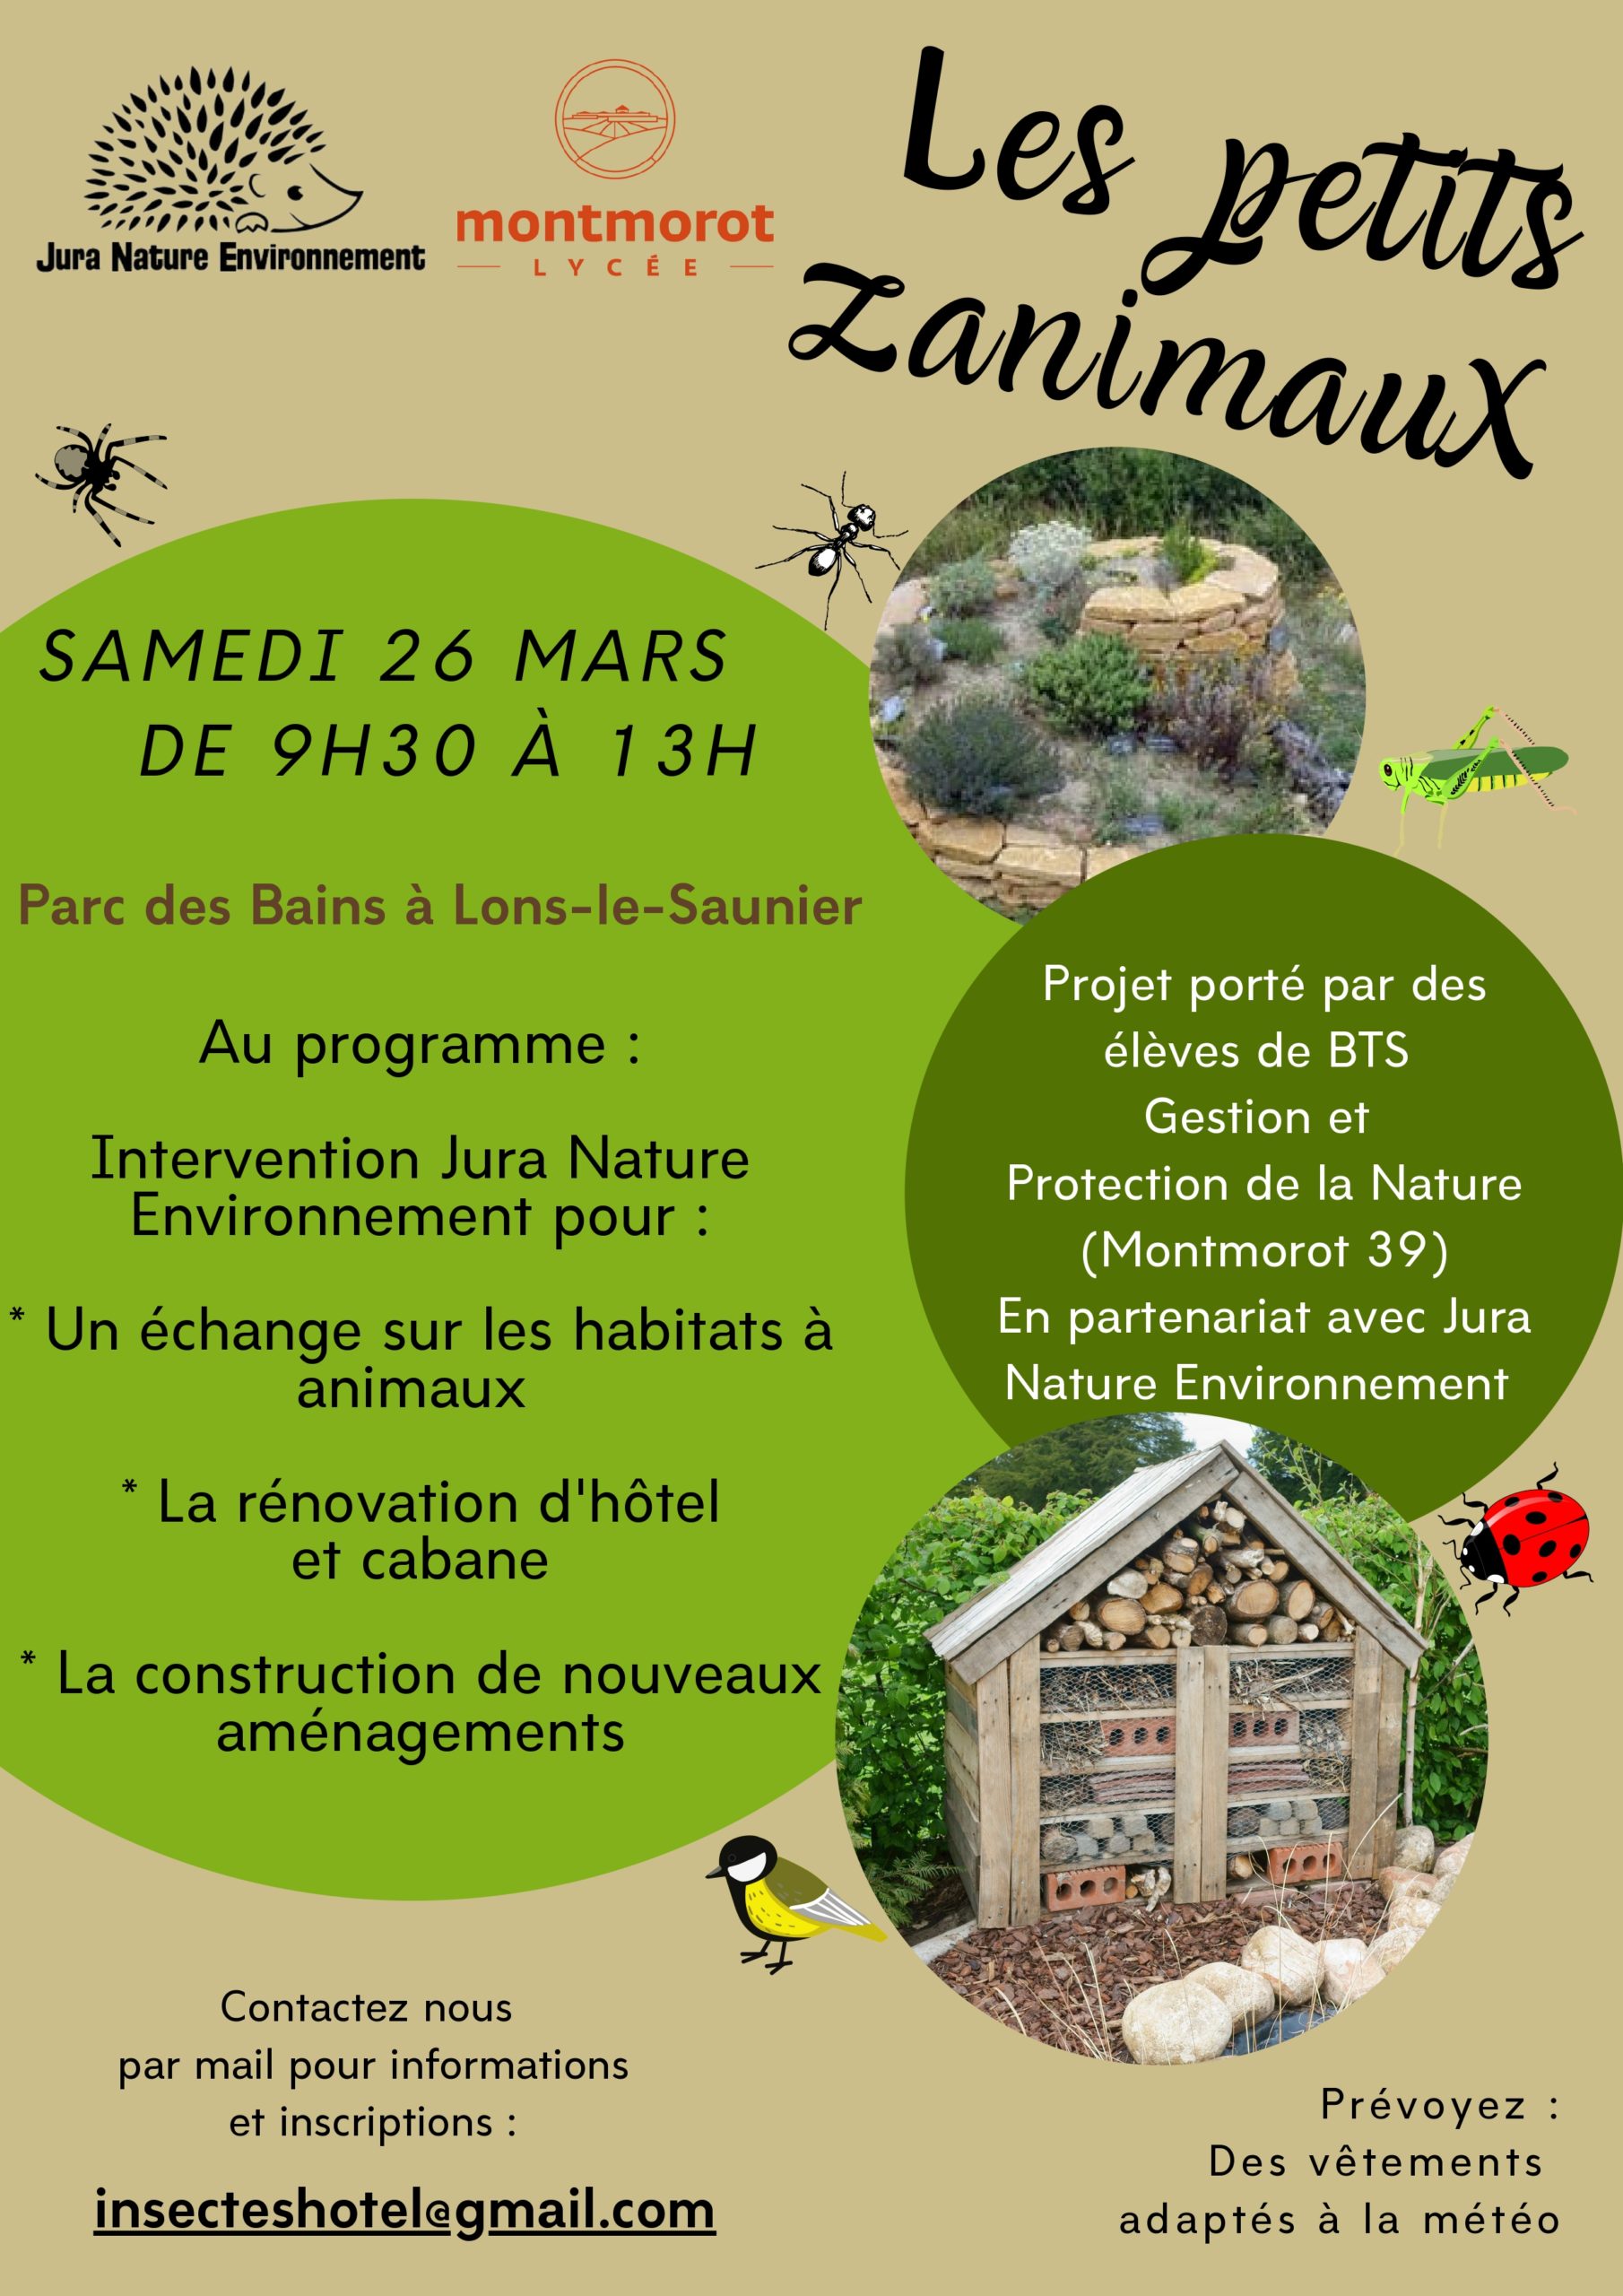 Hôtels à insectes & Cie le samedi 26 mars au Parc des Bains